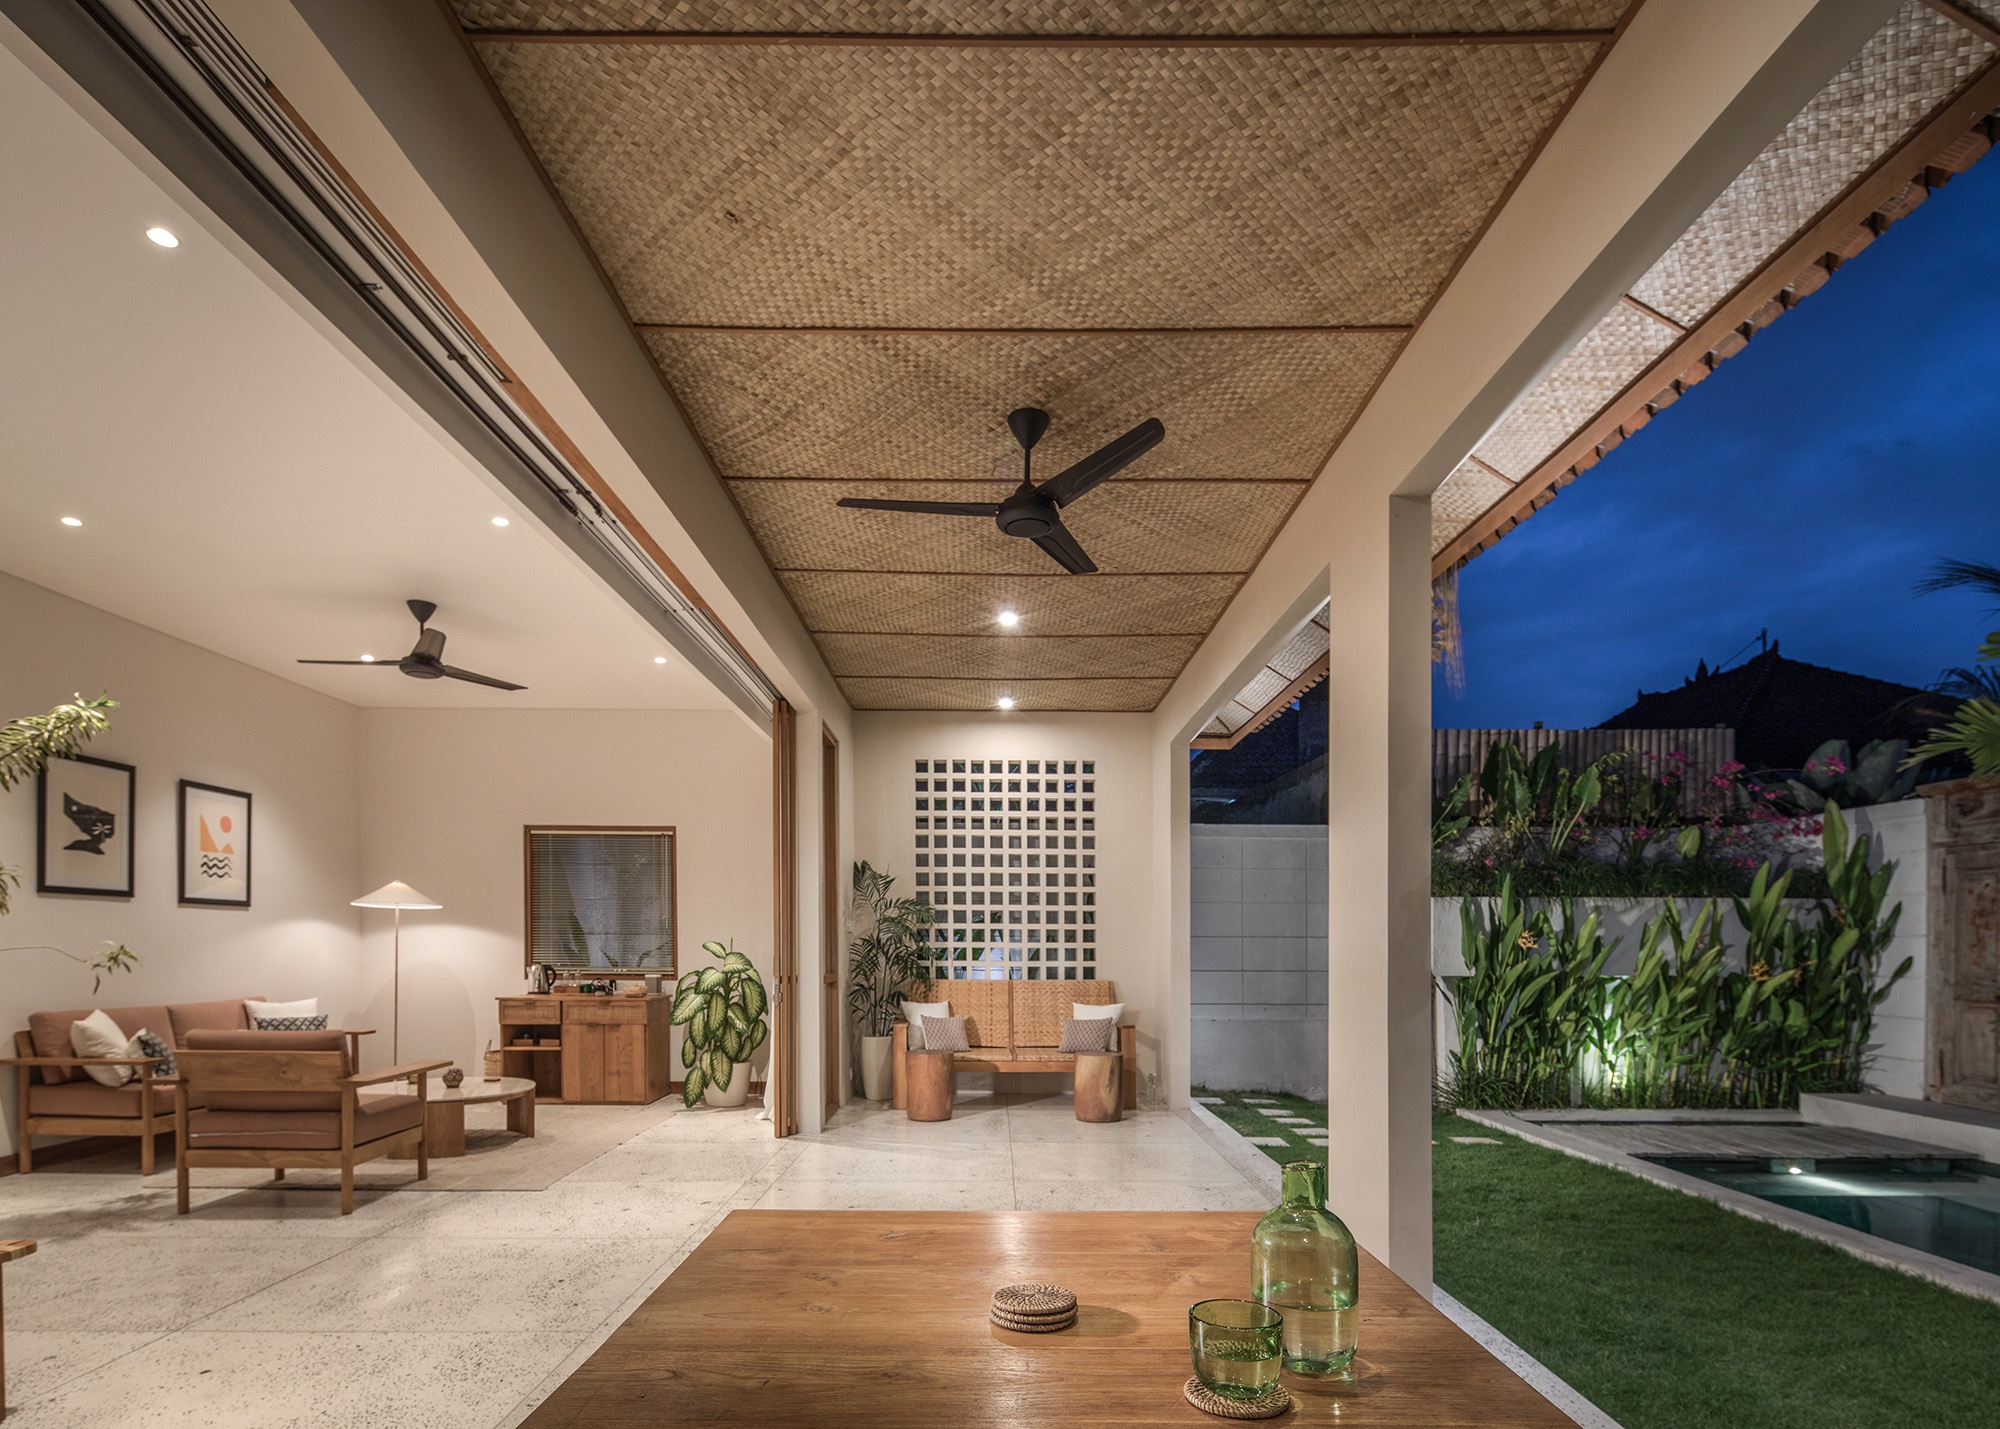 Design Assembly - Two Palms Studio - Bali Architect - Interior Design - Bali Villa - Building Facade